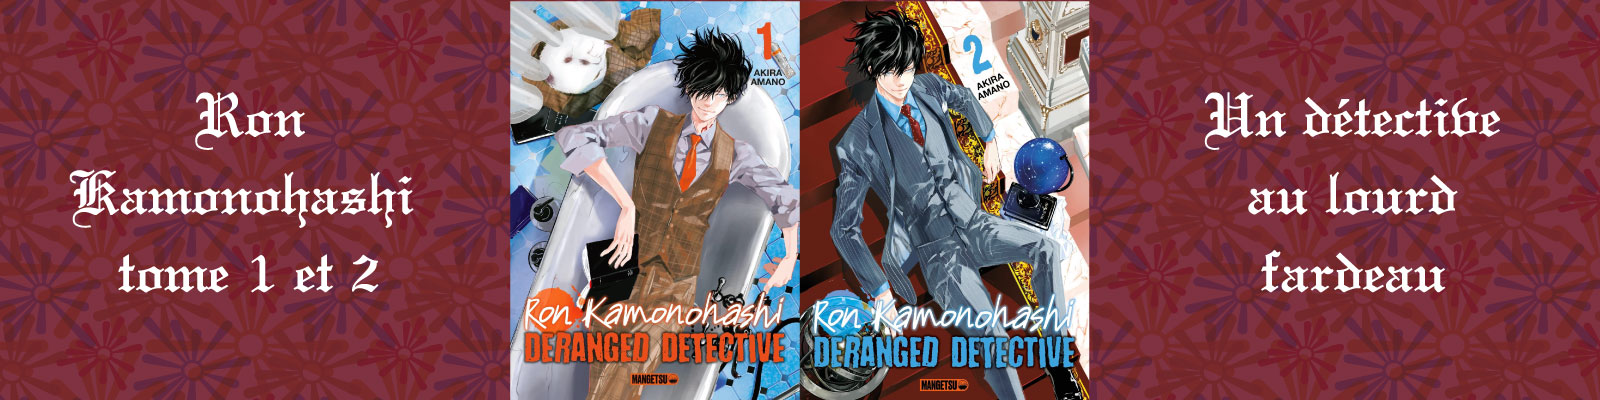 Ron Kamonohashi---Deranged-Detective-Vol.2-2